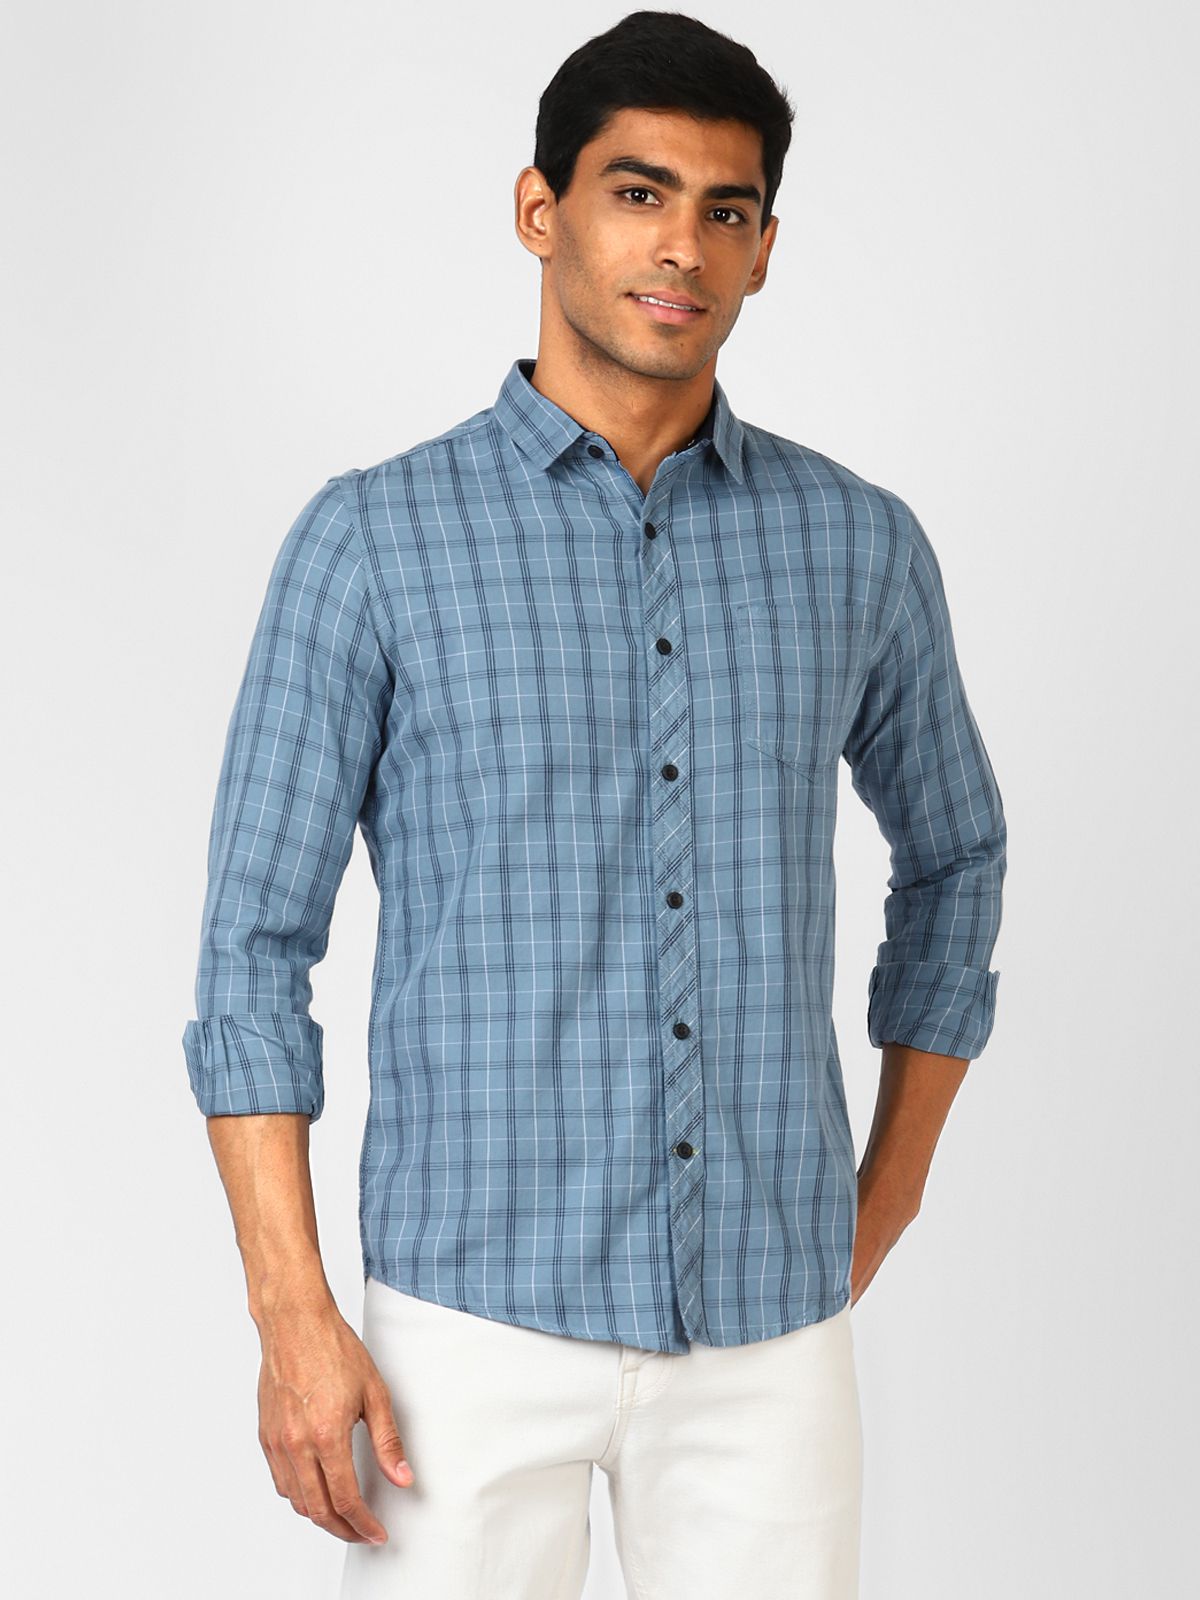 UrbanMark Men 100% Cotton Full Sleeves Regular Fit Check Casual Shirt-White & Blue